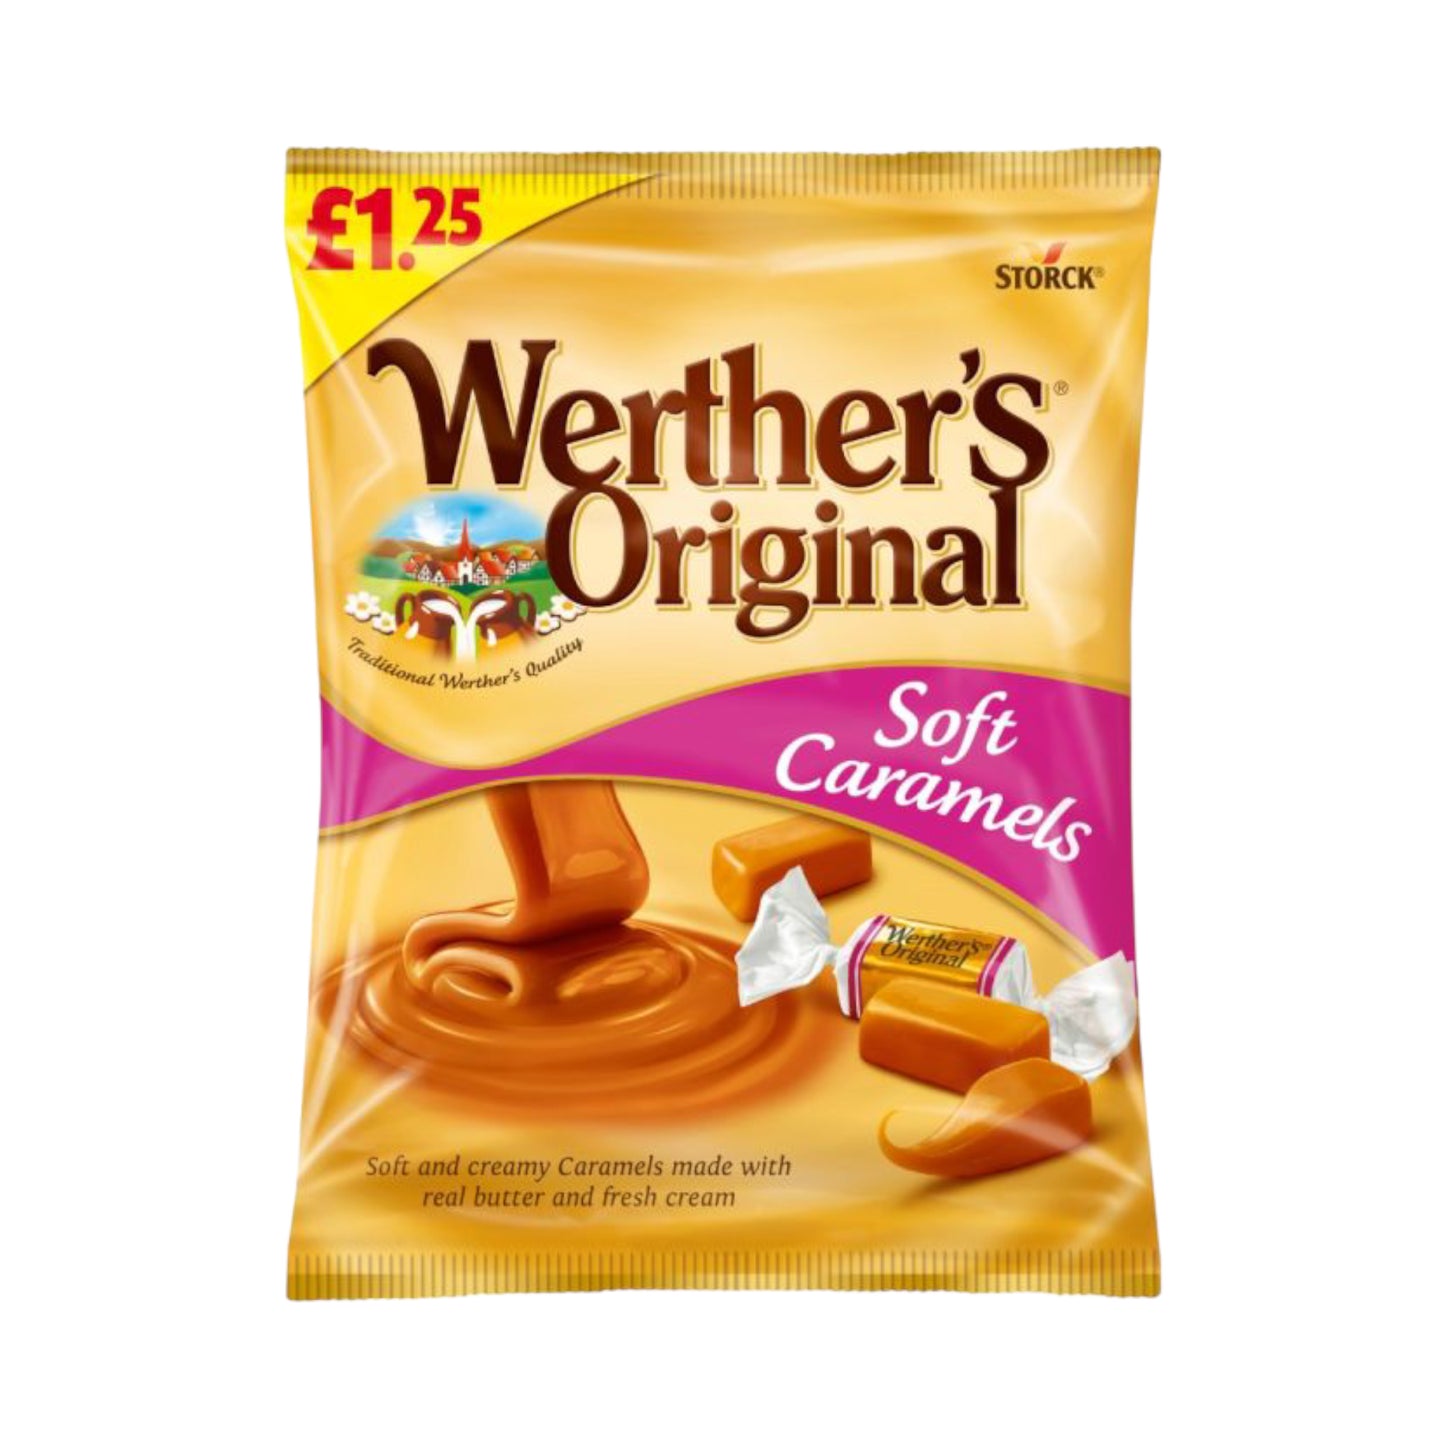 Werther's Original Soft Caramels - 110g (£1.25 PMP)